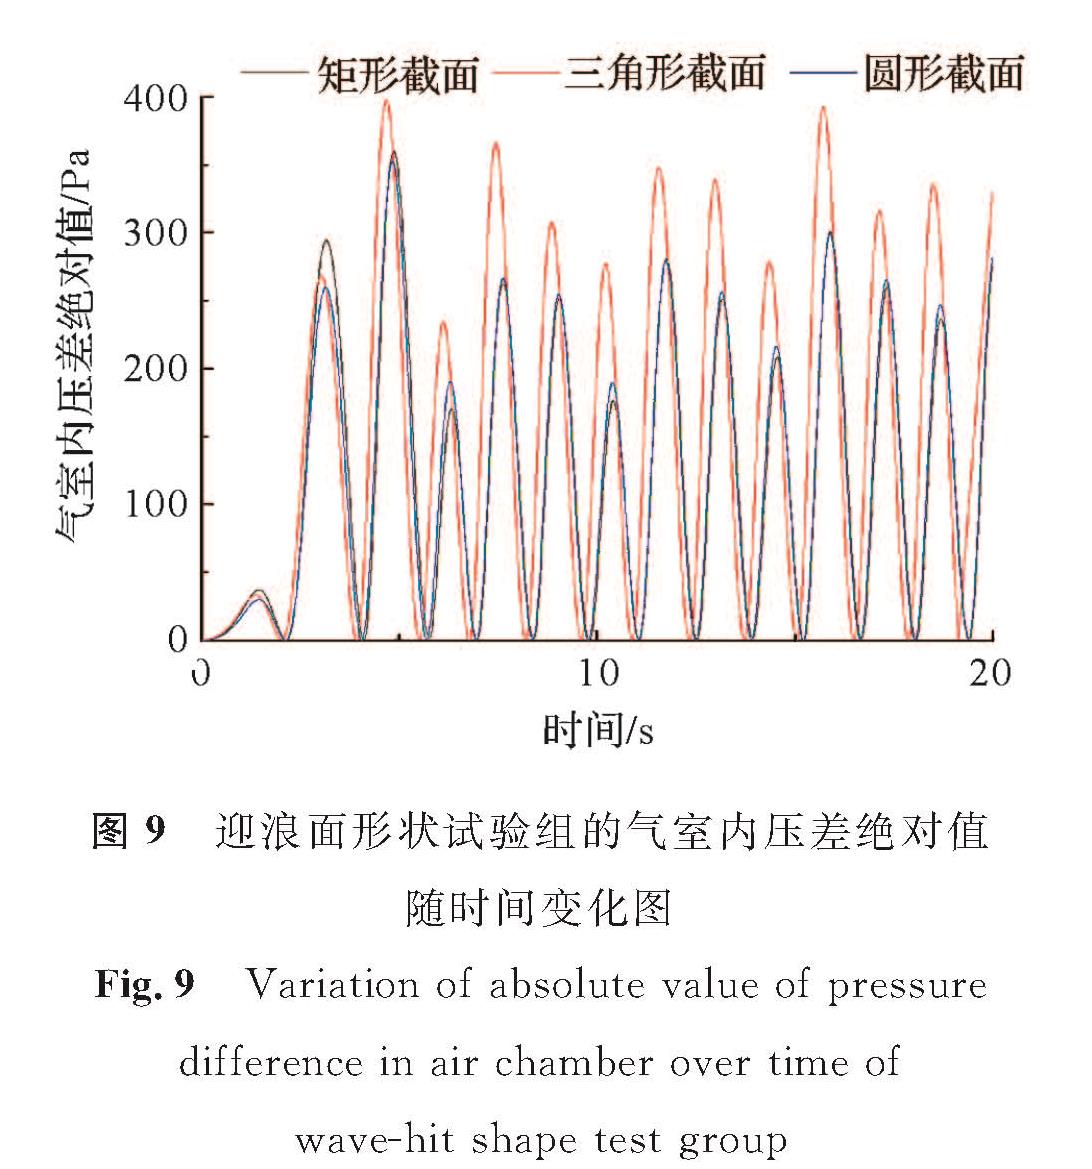 图9 迎浪面形状试验组的气室内压差绝对值随时间变化图<br/>Fig.9 Variation of absolute value of pressure difference in air chamber over time of wave-hit shape test group